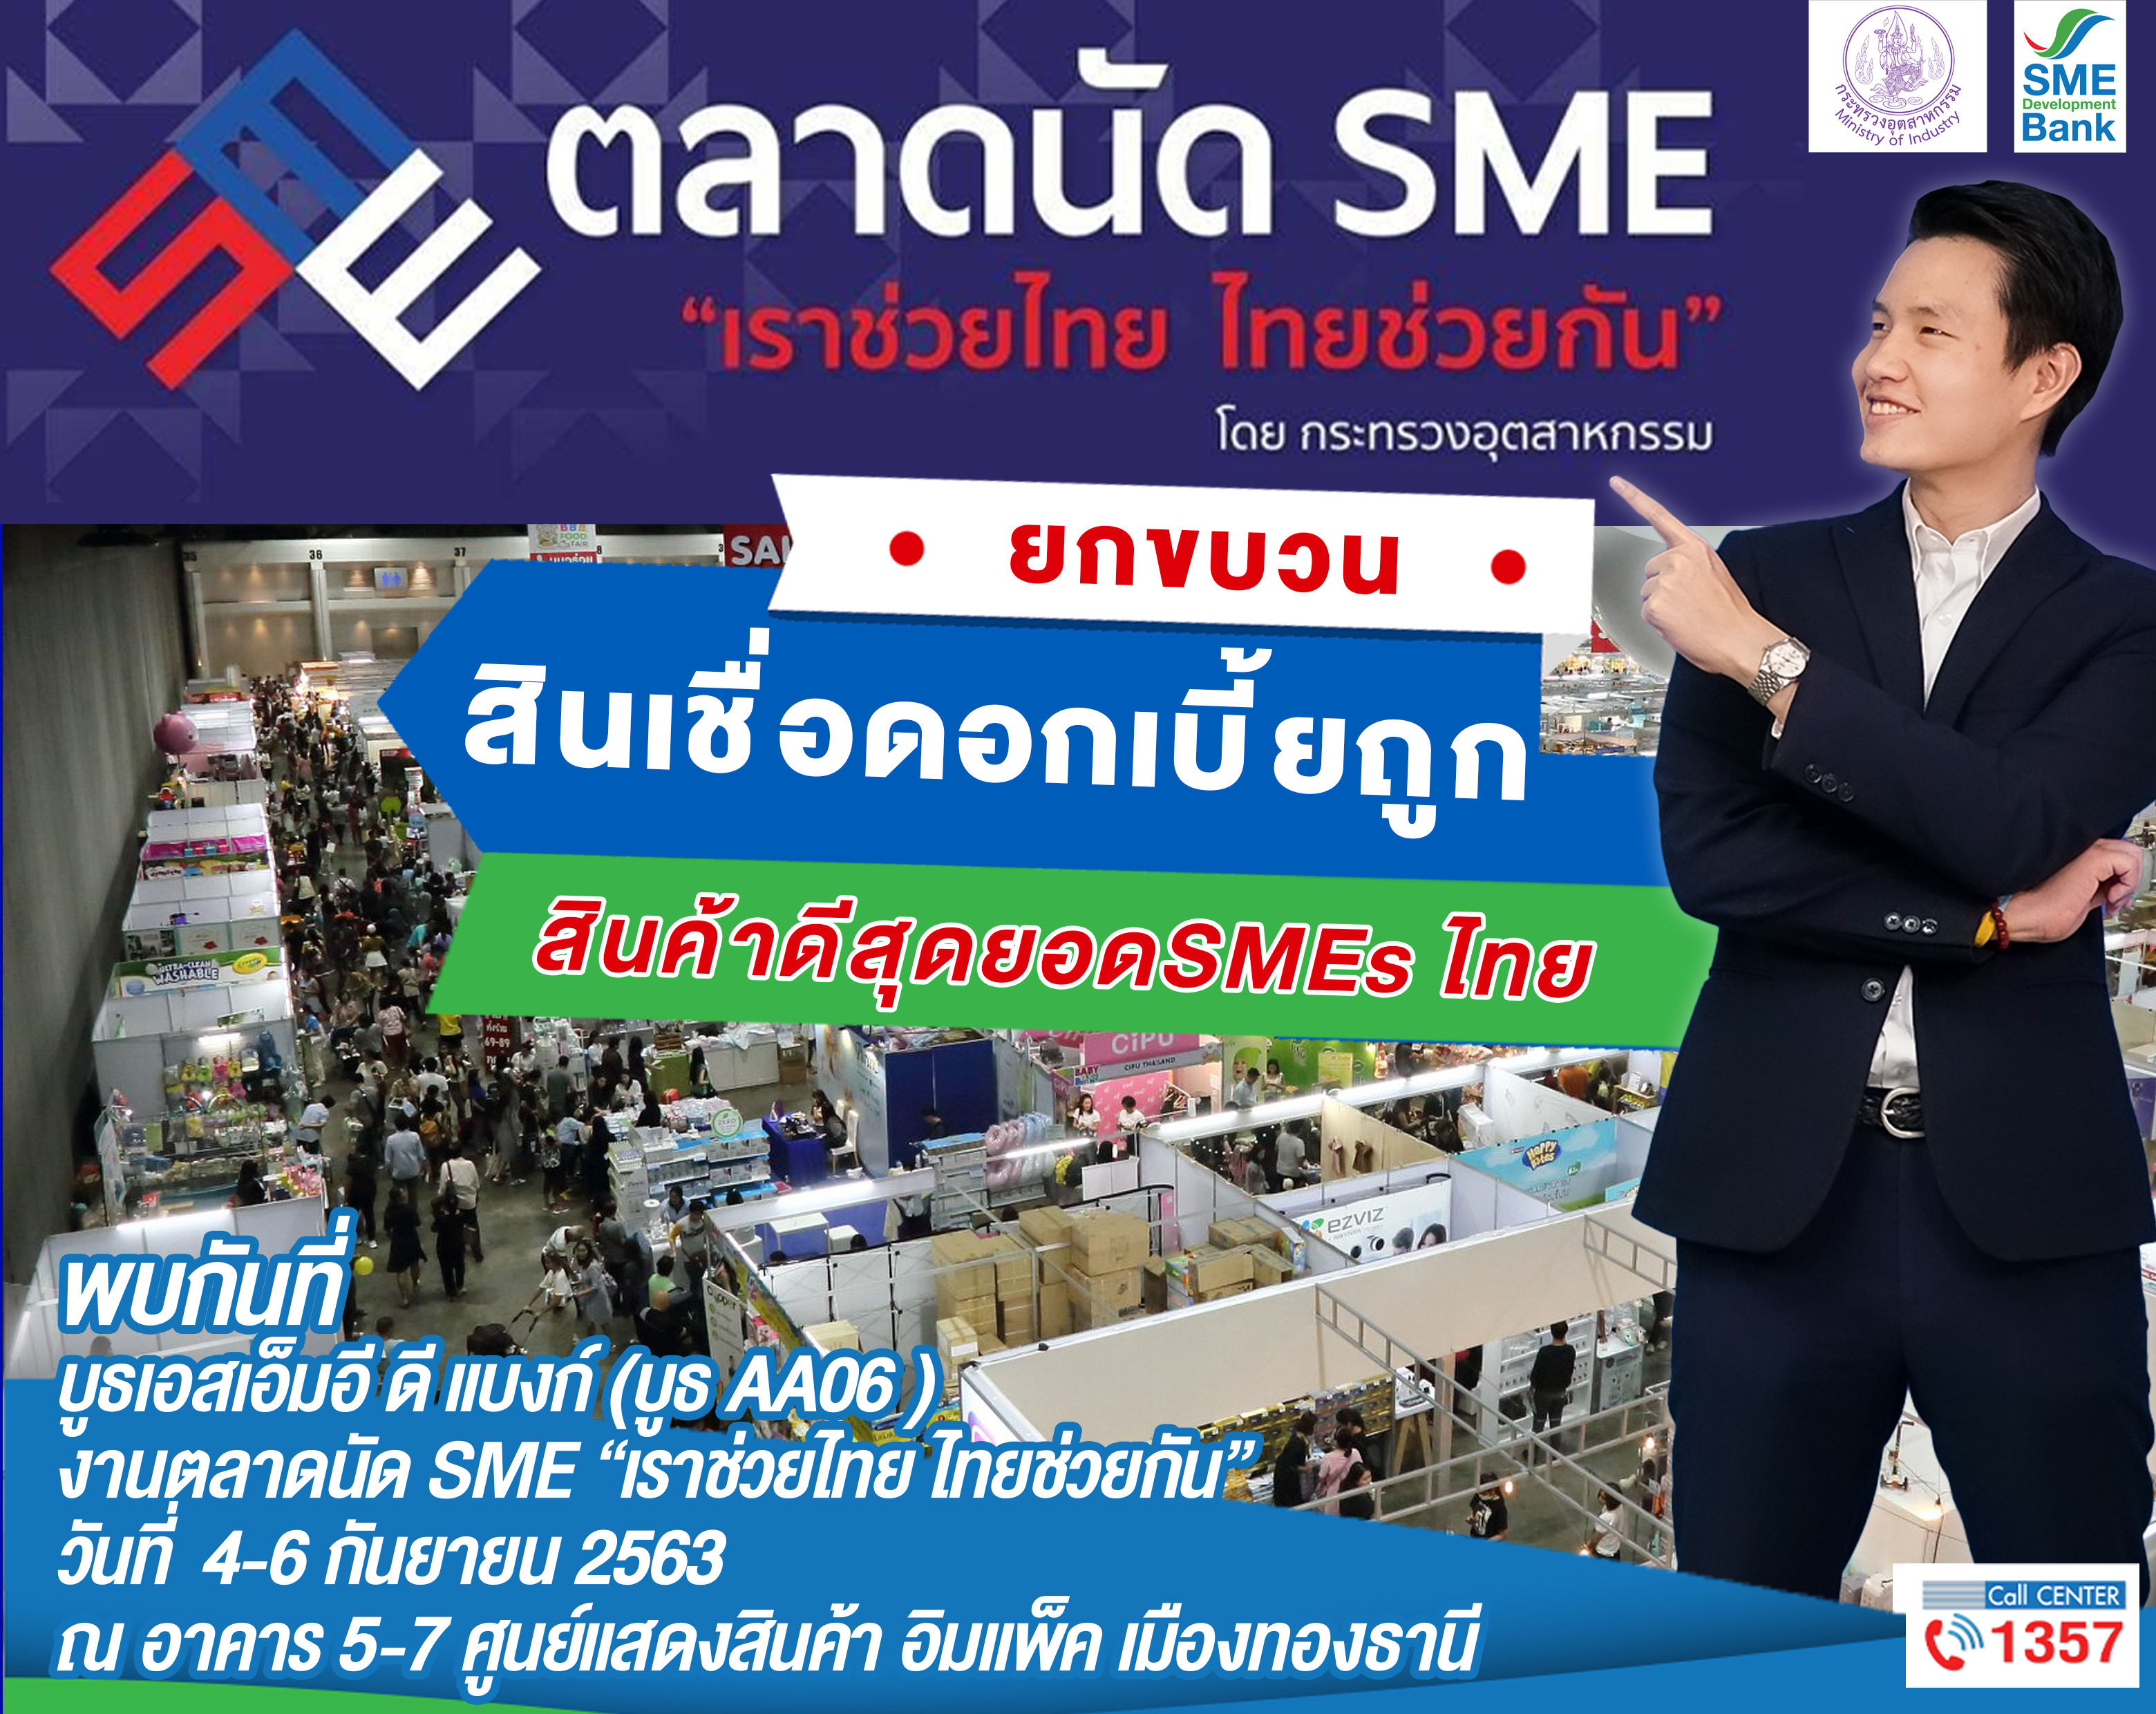 ธพว.จัดเต็มร่วมงานตลาดนัด SME “เราช่วยไทย ไทยช่วยกัน” 4-6 ก.ย.นี้